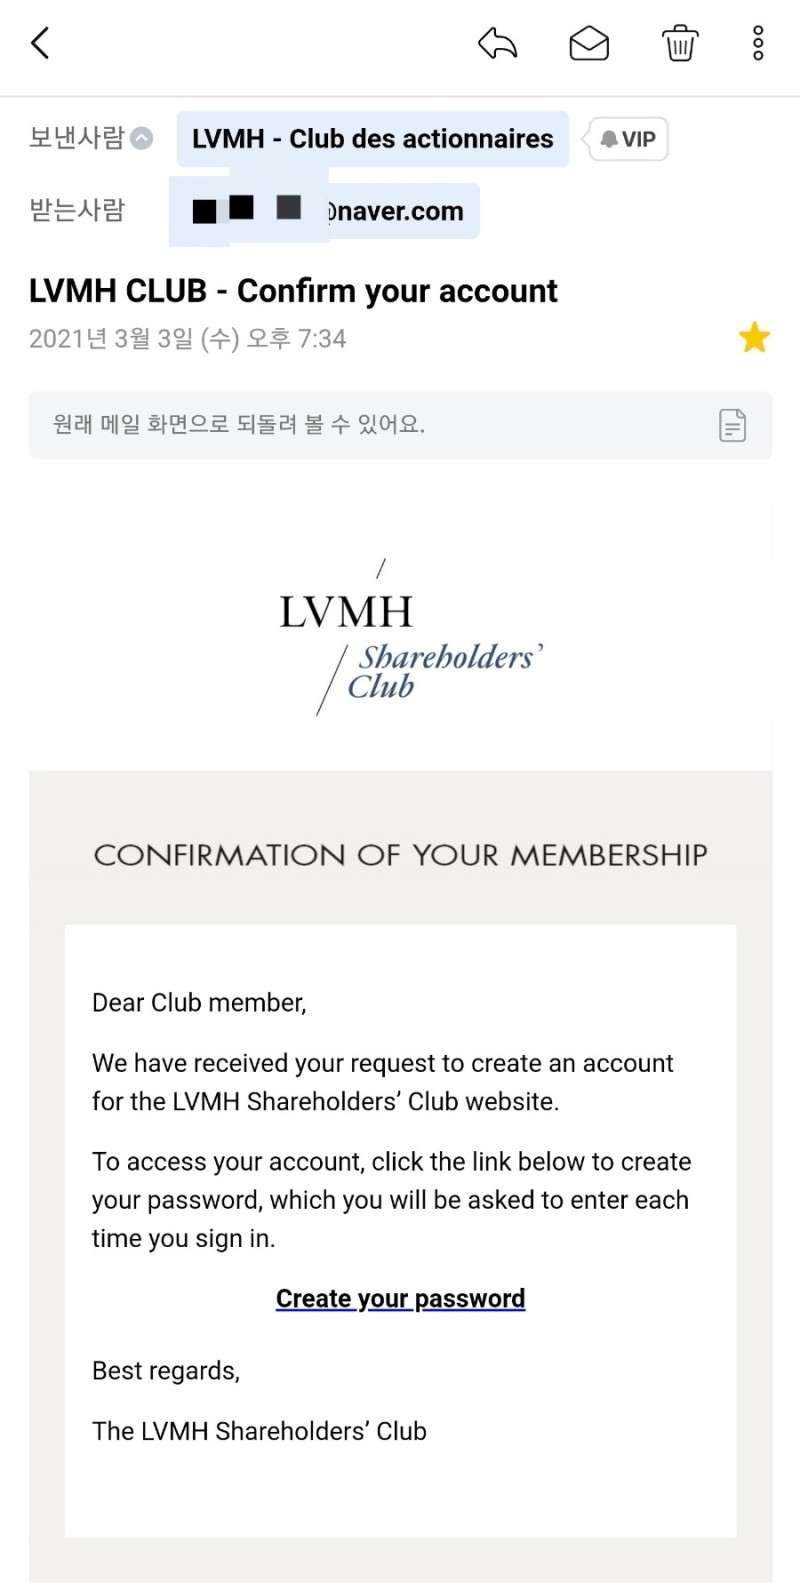 LVMH Shareholders' Club